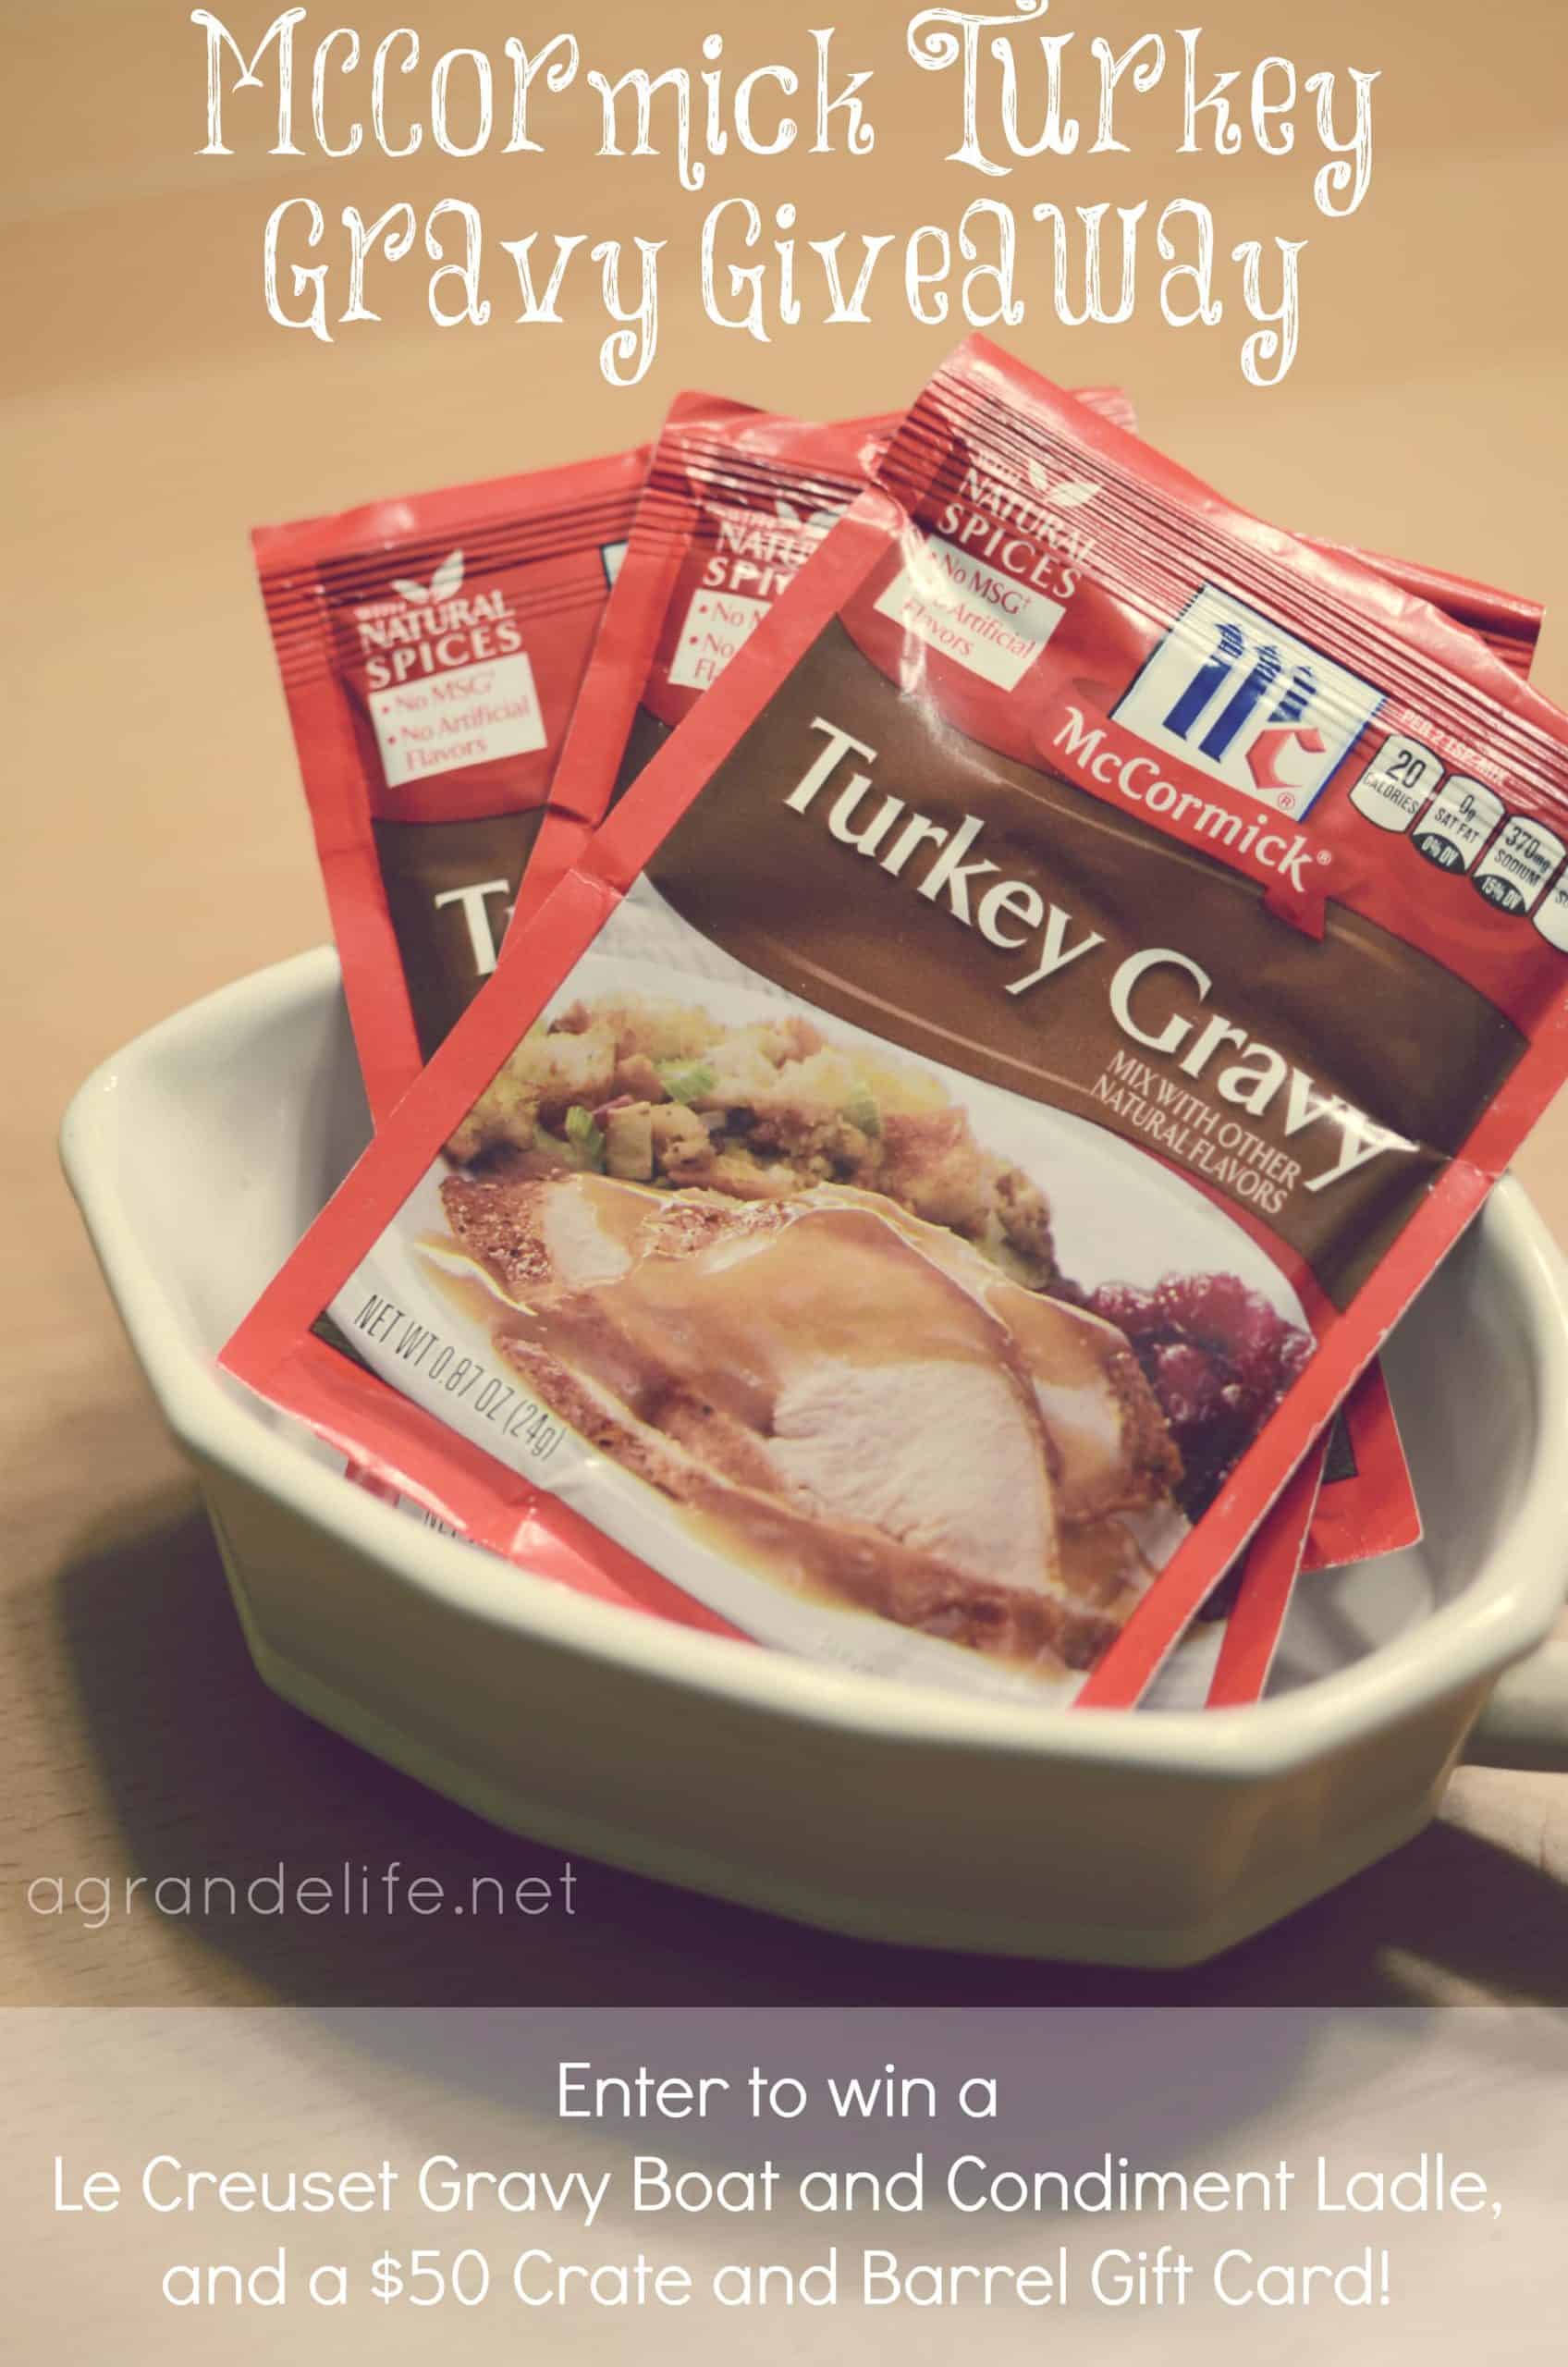 https://agrandelife.net/wp-content/uploads/2012/11/mccormick-turkey-gravy-2-scaled.jpg